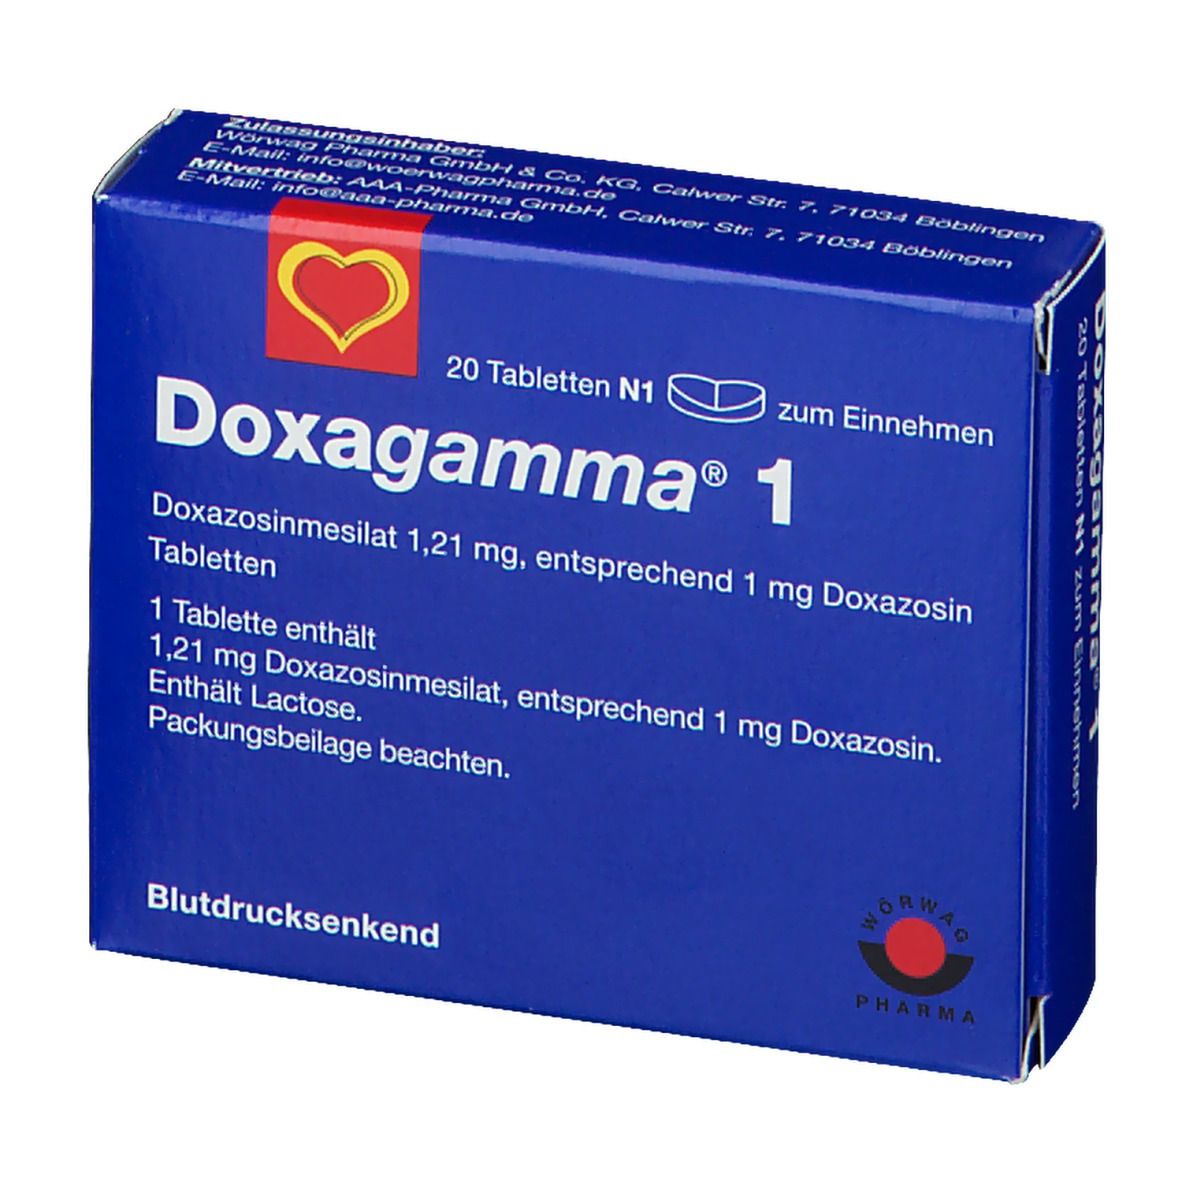 Doxagamma® 1